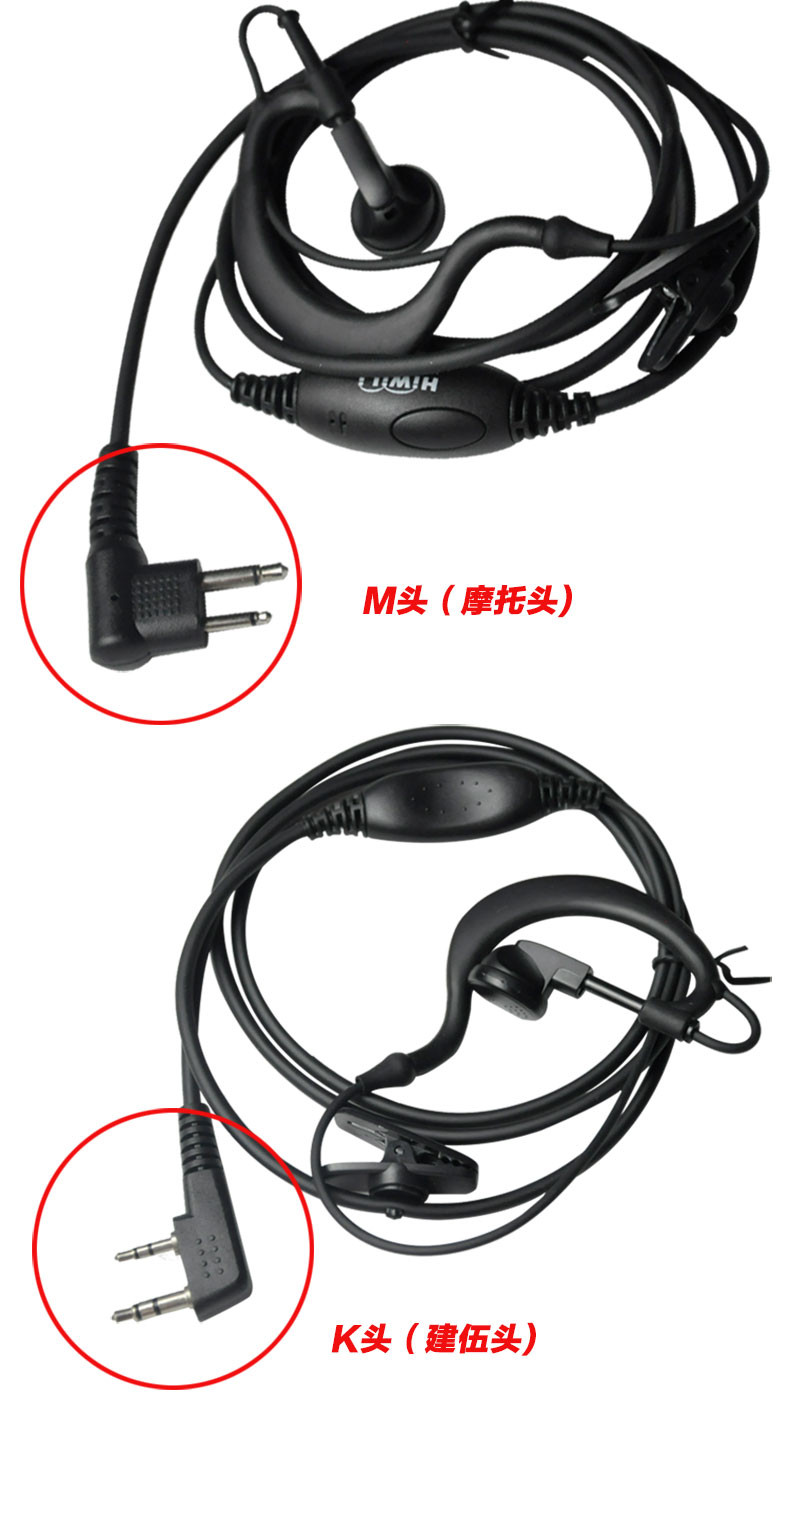 海唯联(HiWiLi) 580 专业对讲机耳麦耳机M口适配摩托罗拉Q5/A8/A10 K口适配建伍好易通科立讯等